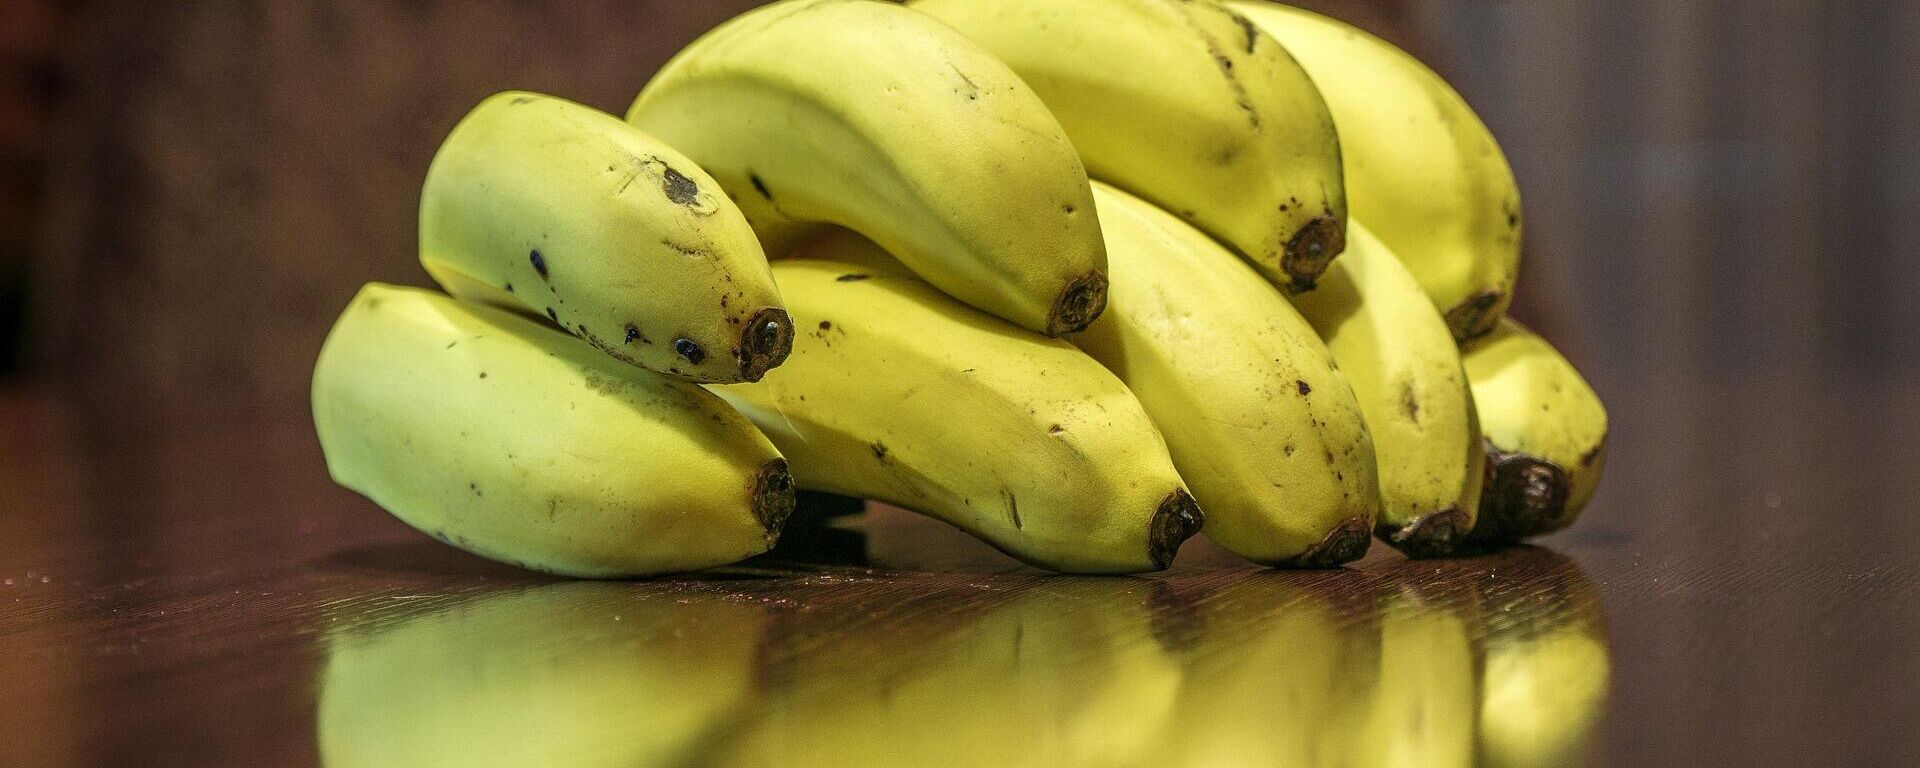 Bananas, plátanos o guineos - Sputnik Mundo, 1920, 01.03.2022